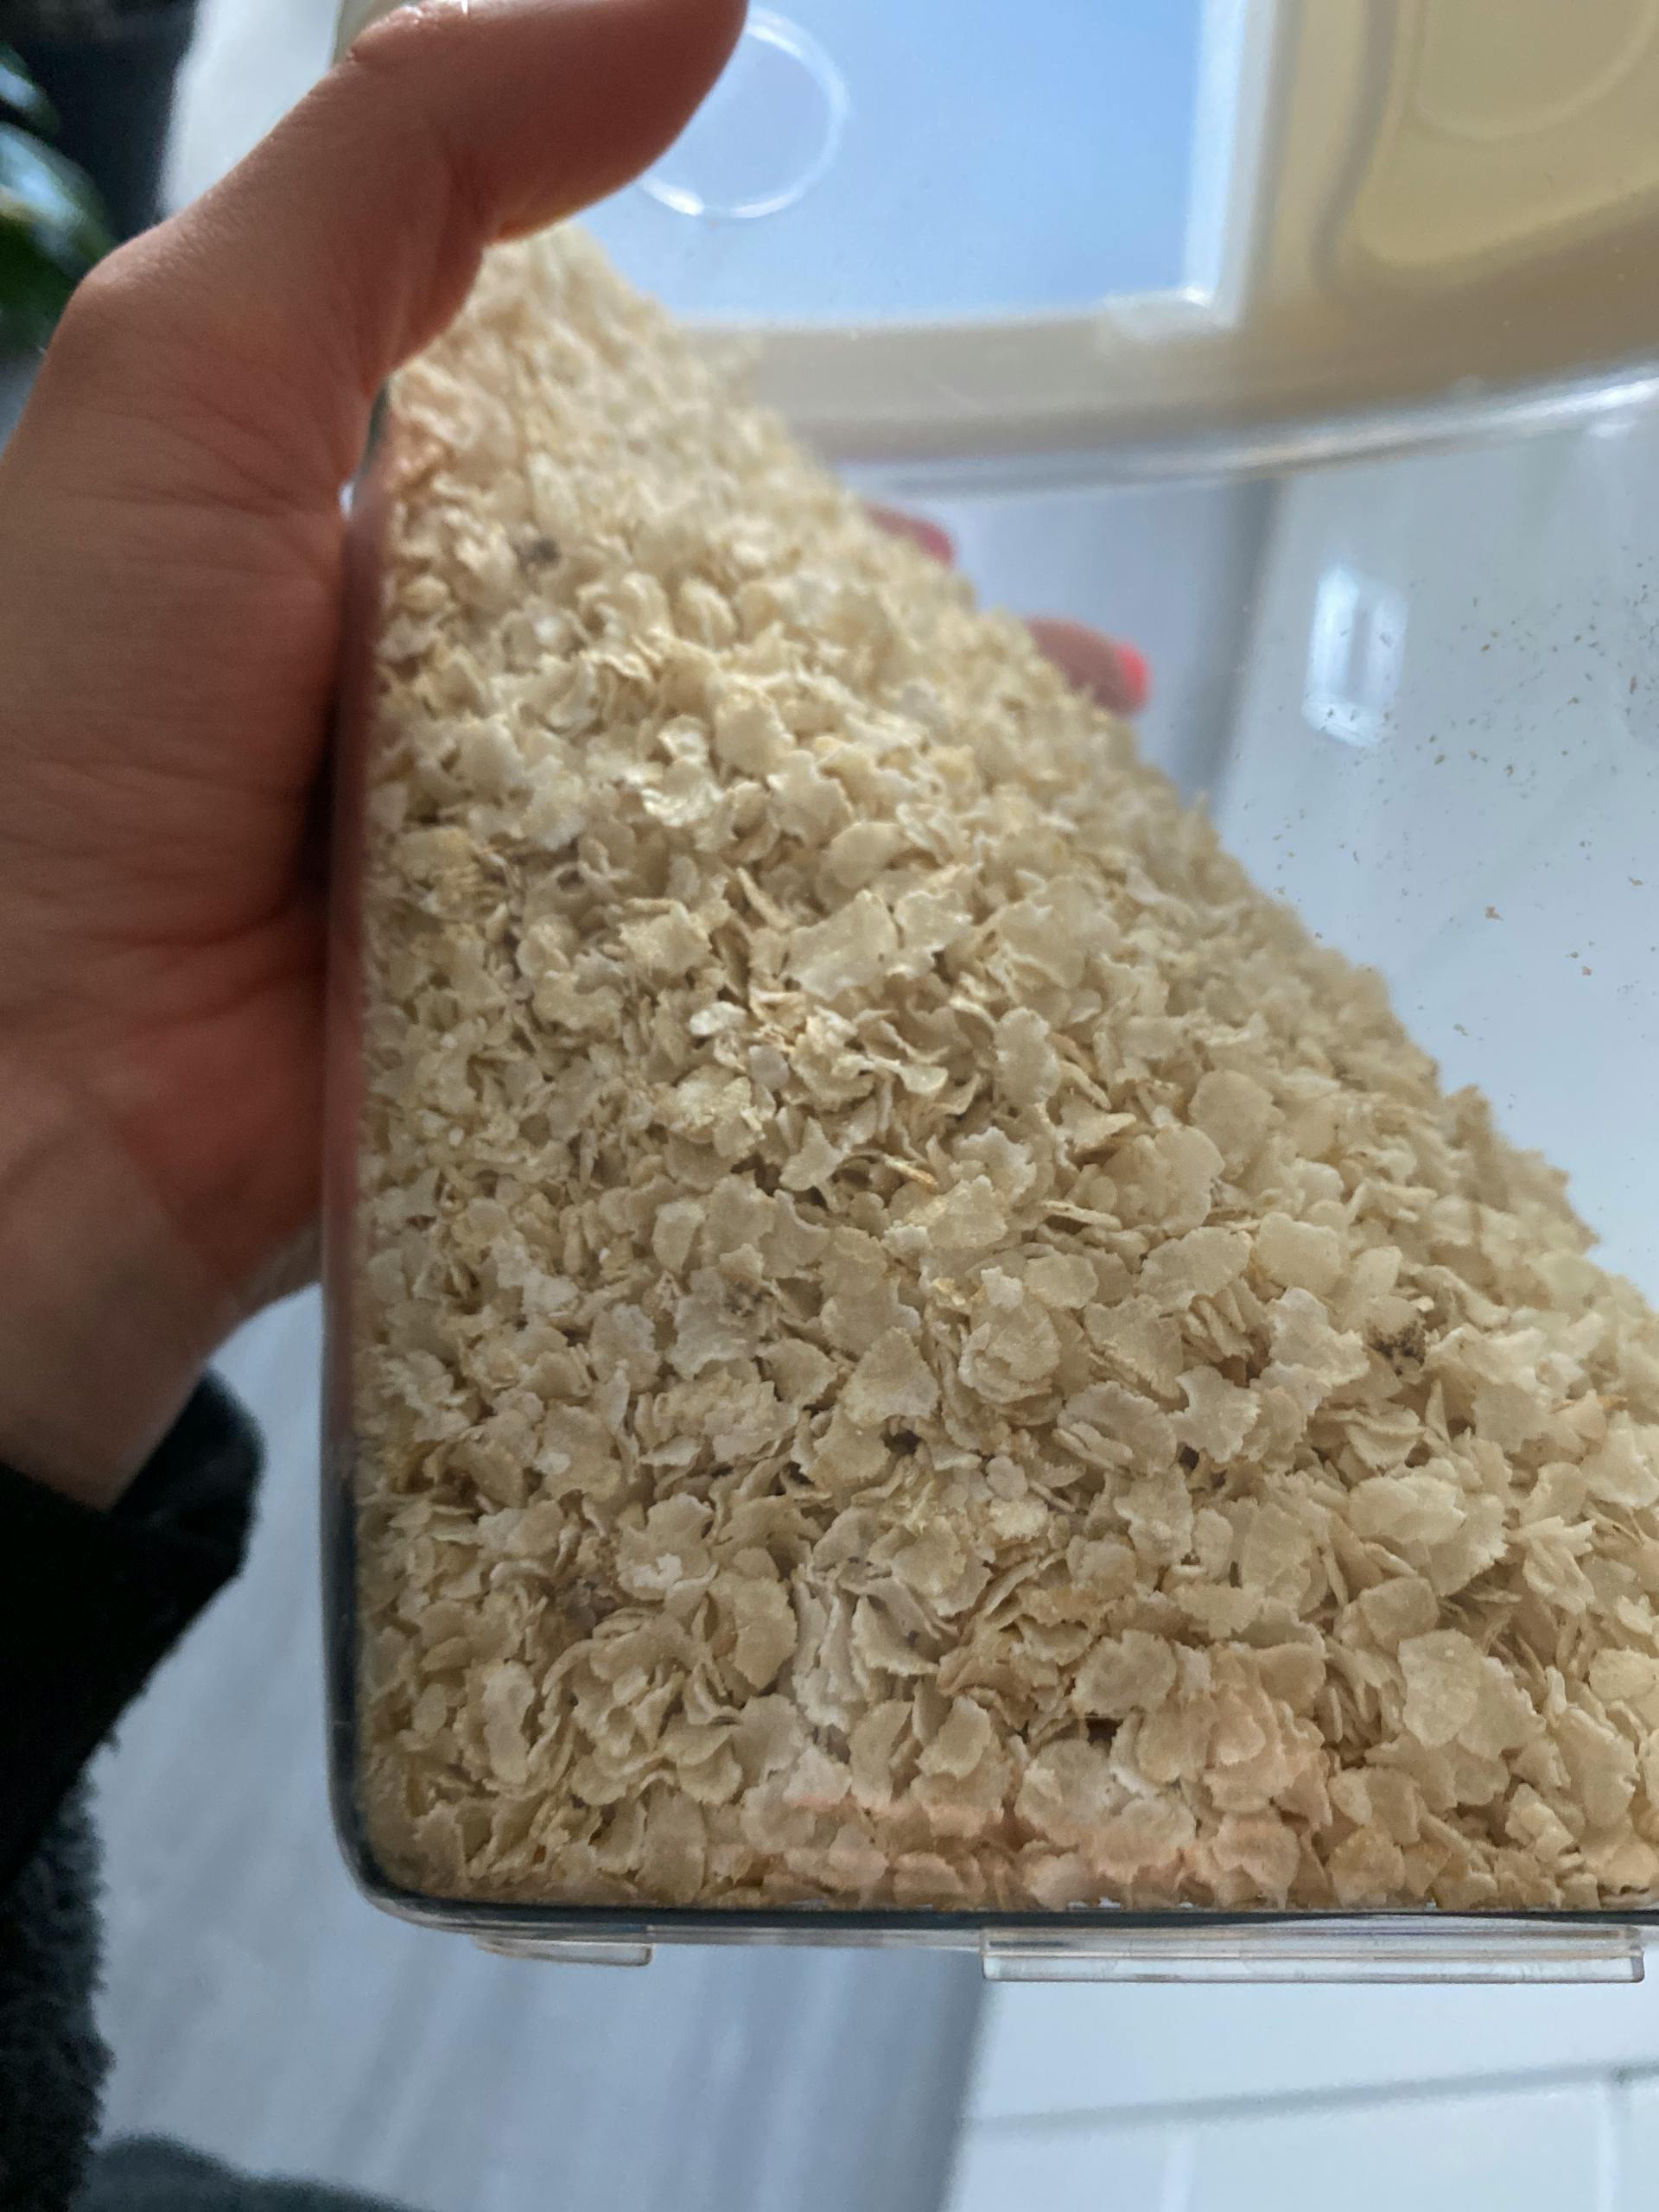 Flocons de riz bio 1 kg - Préparation rapide - Vegan